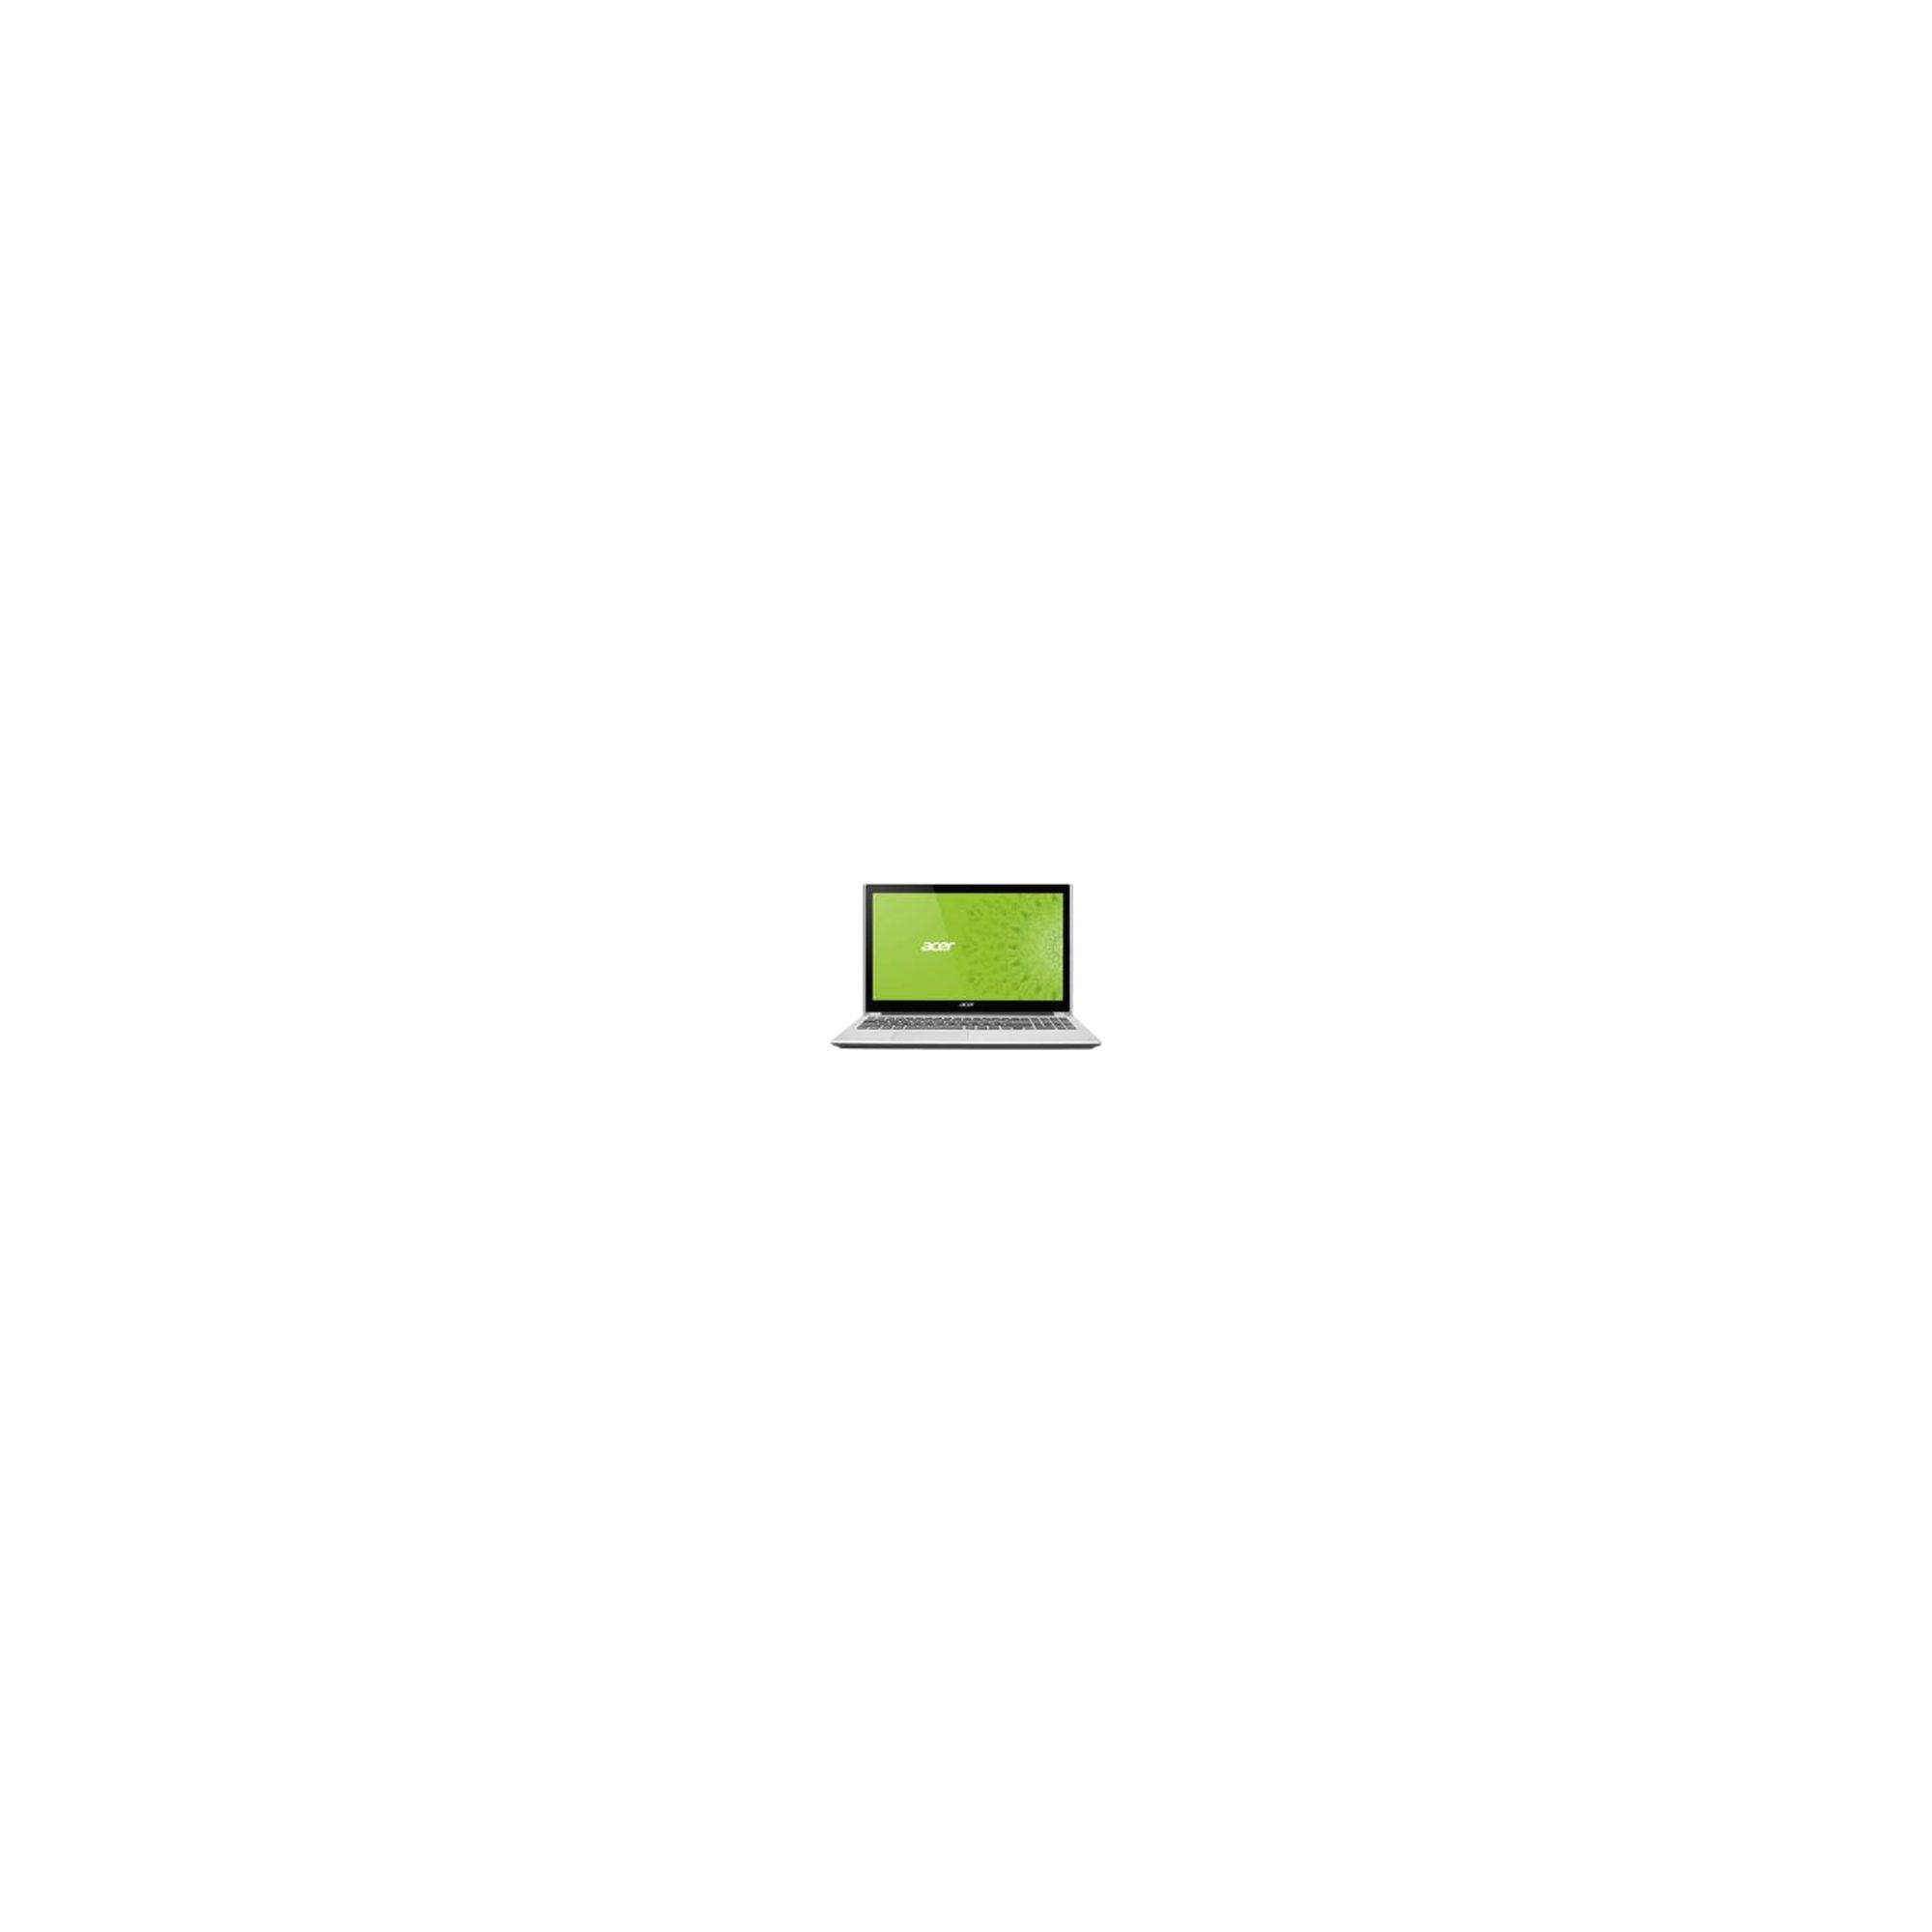 Acer Aspire V5-571P (15.6 inch) Notebook Core i3 (2365M) 1.4GHz 4GB 500GB DVD-SM DL WLAN BT Webcam Windows 8 64-bit (Multi-Language) UMA Graphics at Tescos Direct